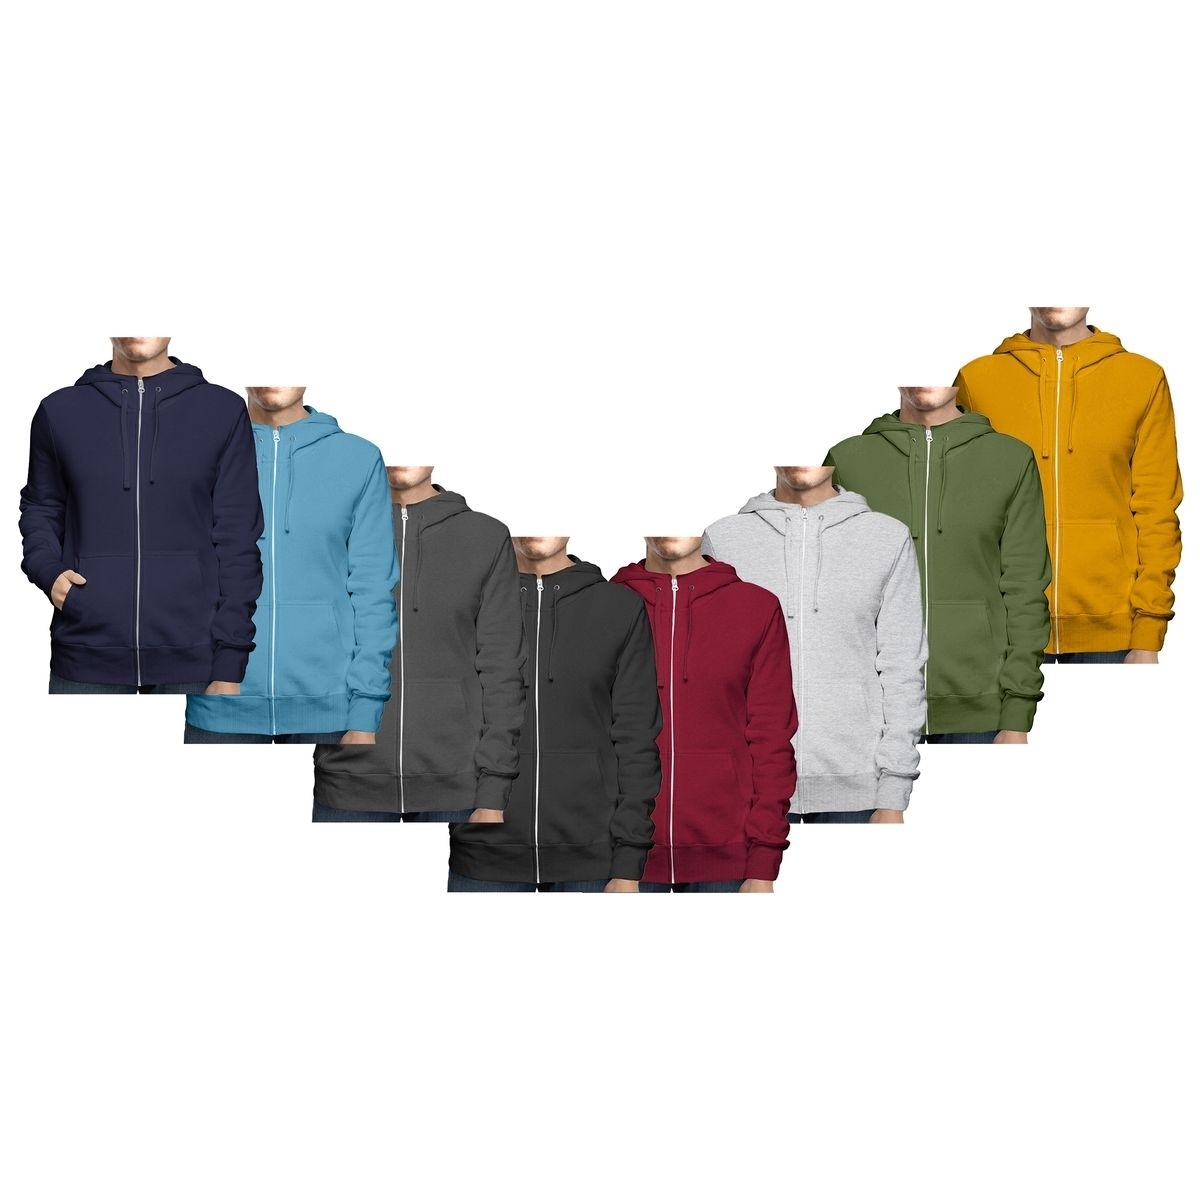 Men's Big & Tall Winter Warm Soft Cozy Full Zip-Up Fleece Lined Hoodie Sweatshirt - Red, X-Large